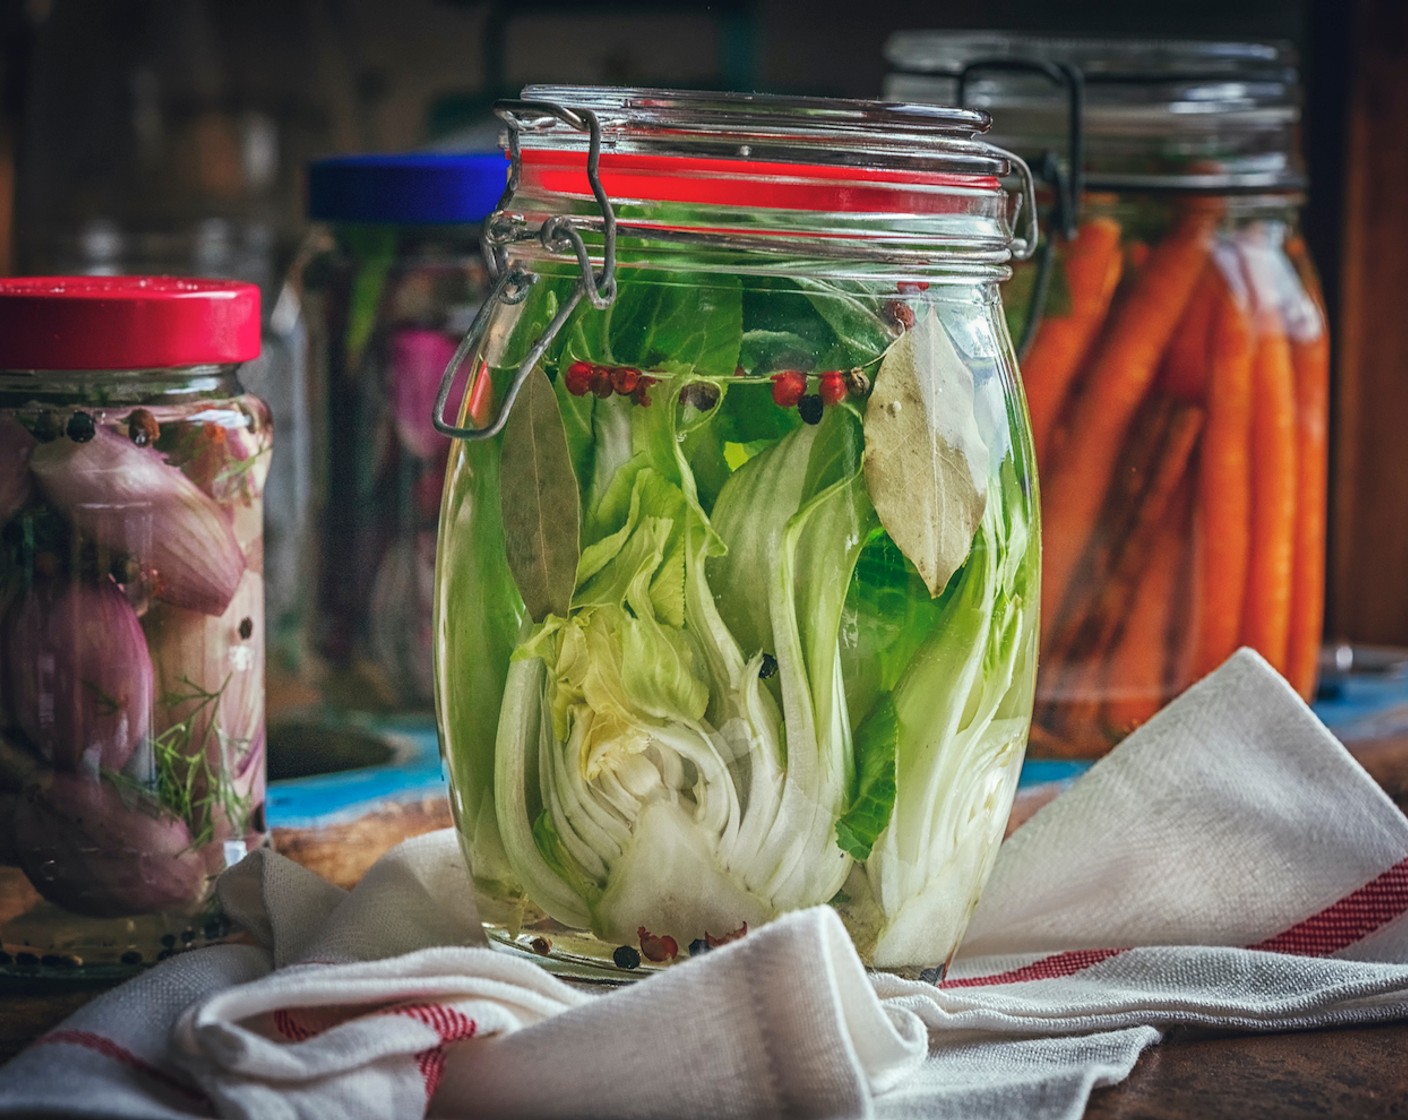 Schritt 6 Das Kimchi in ein Glas geben und drücken, bis die Salzlake aufsteigt und das Gemüse bedeckt. Das Glas verschliessen und 1 bis 5 Tage gären lassen, bei kühler Raumtemperatur und ohne direkte Sonneneinstrahlung.